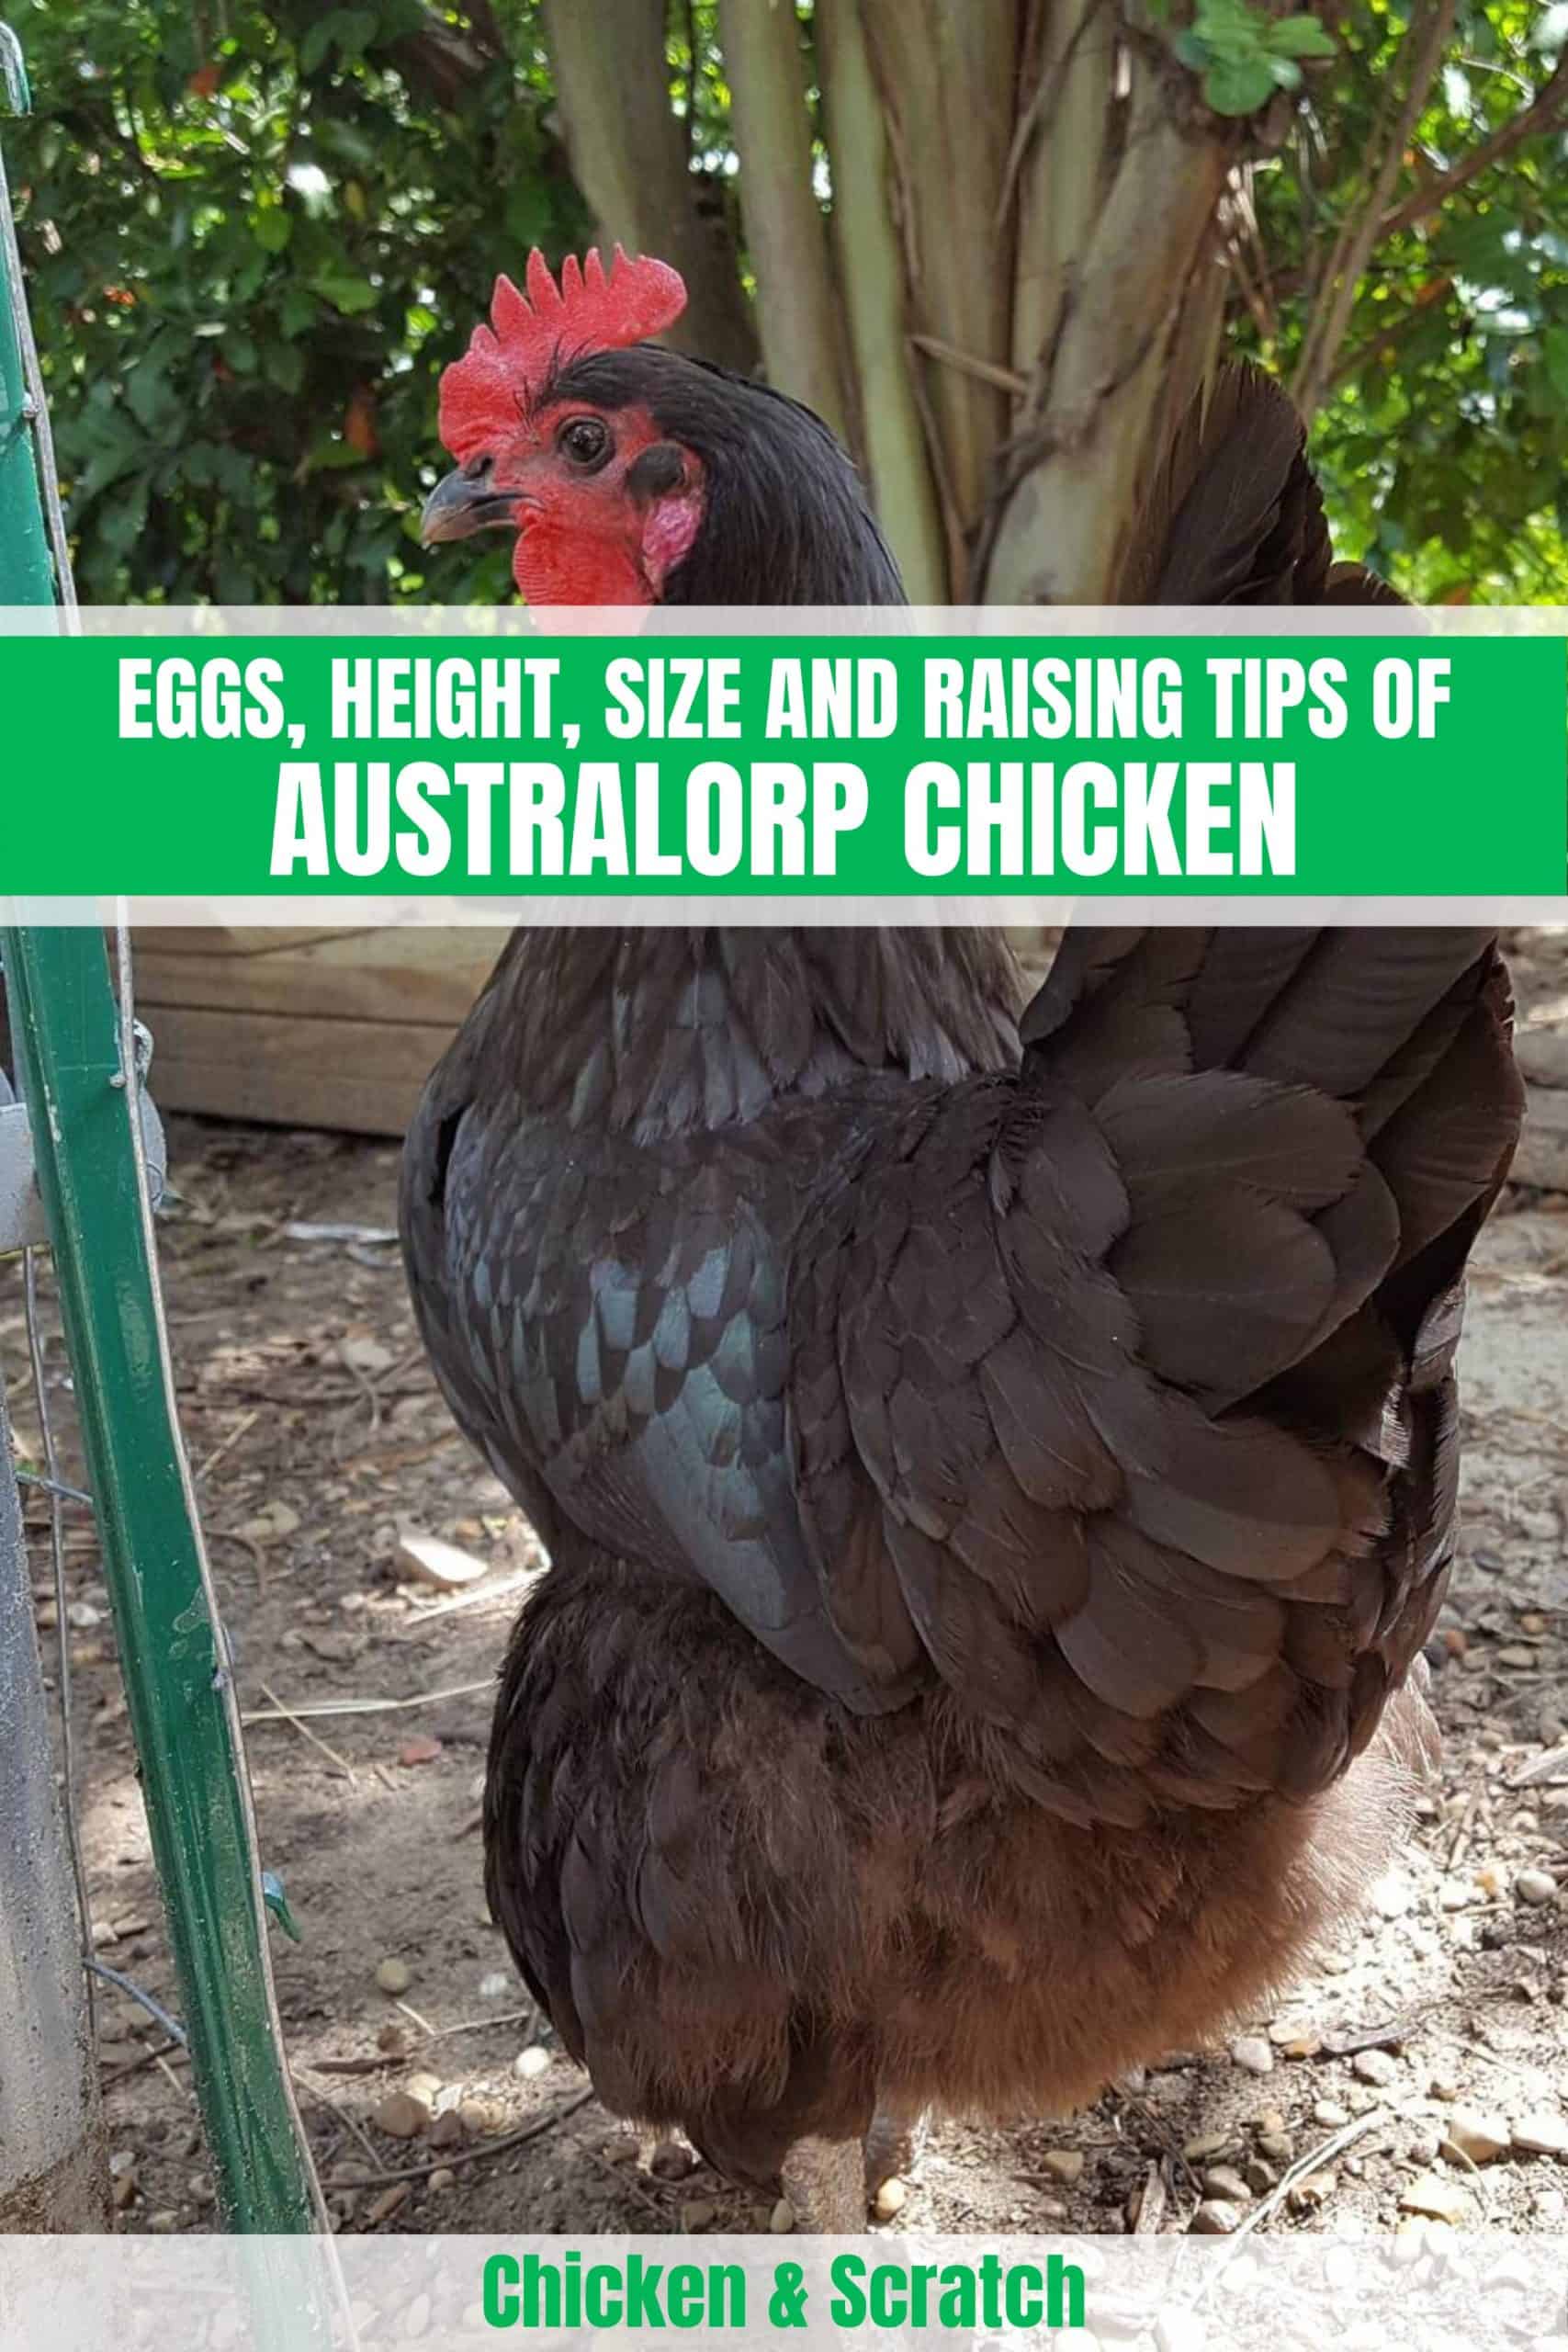 Descubra a galinha Australorp: Ovos, altura, tamanho e dicas de criação